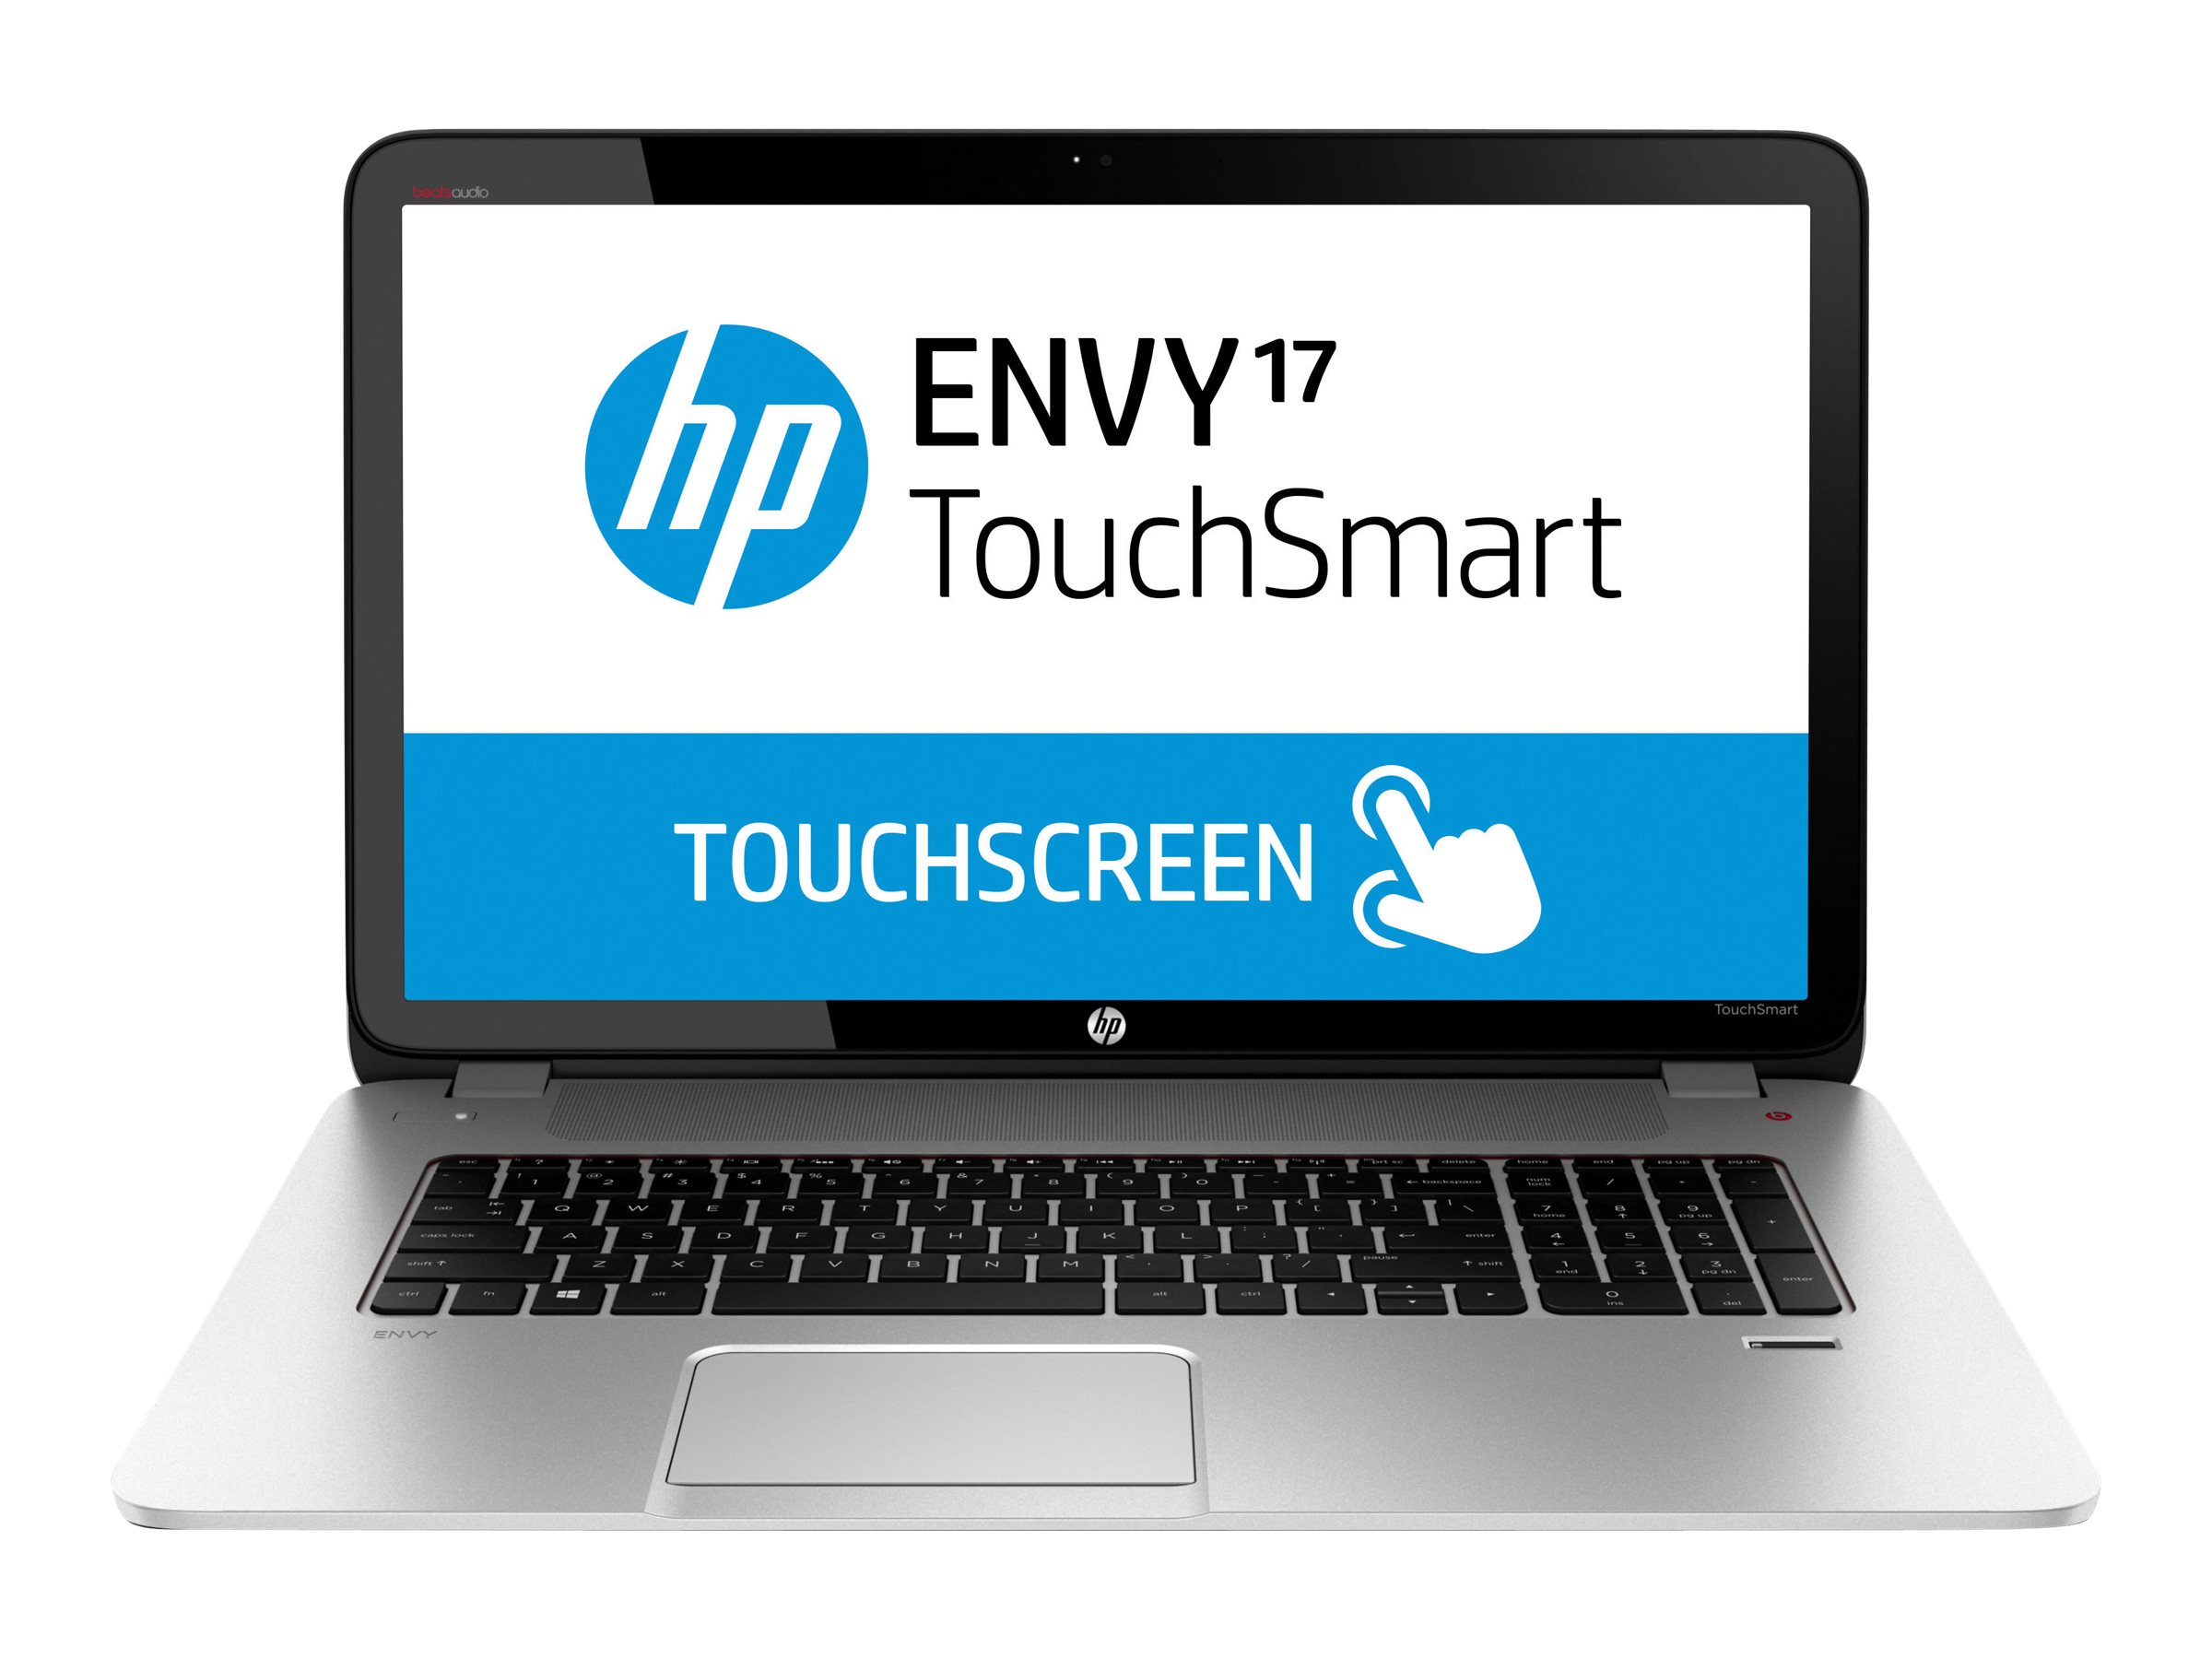 HP ENVY TouchSmart 17